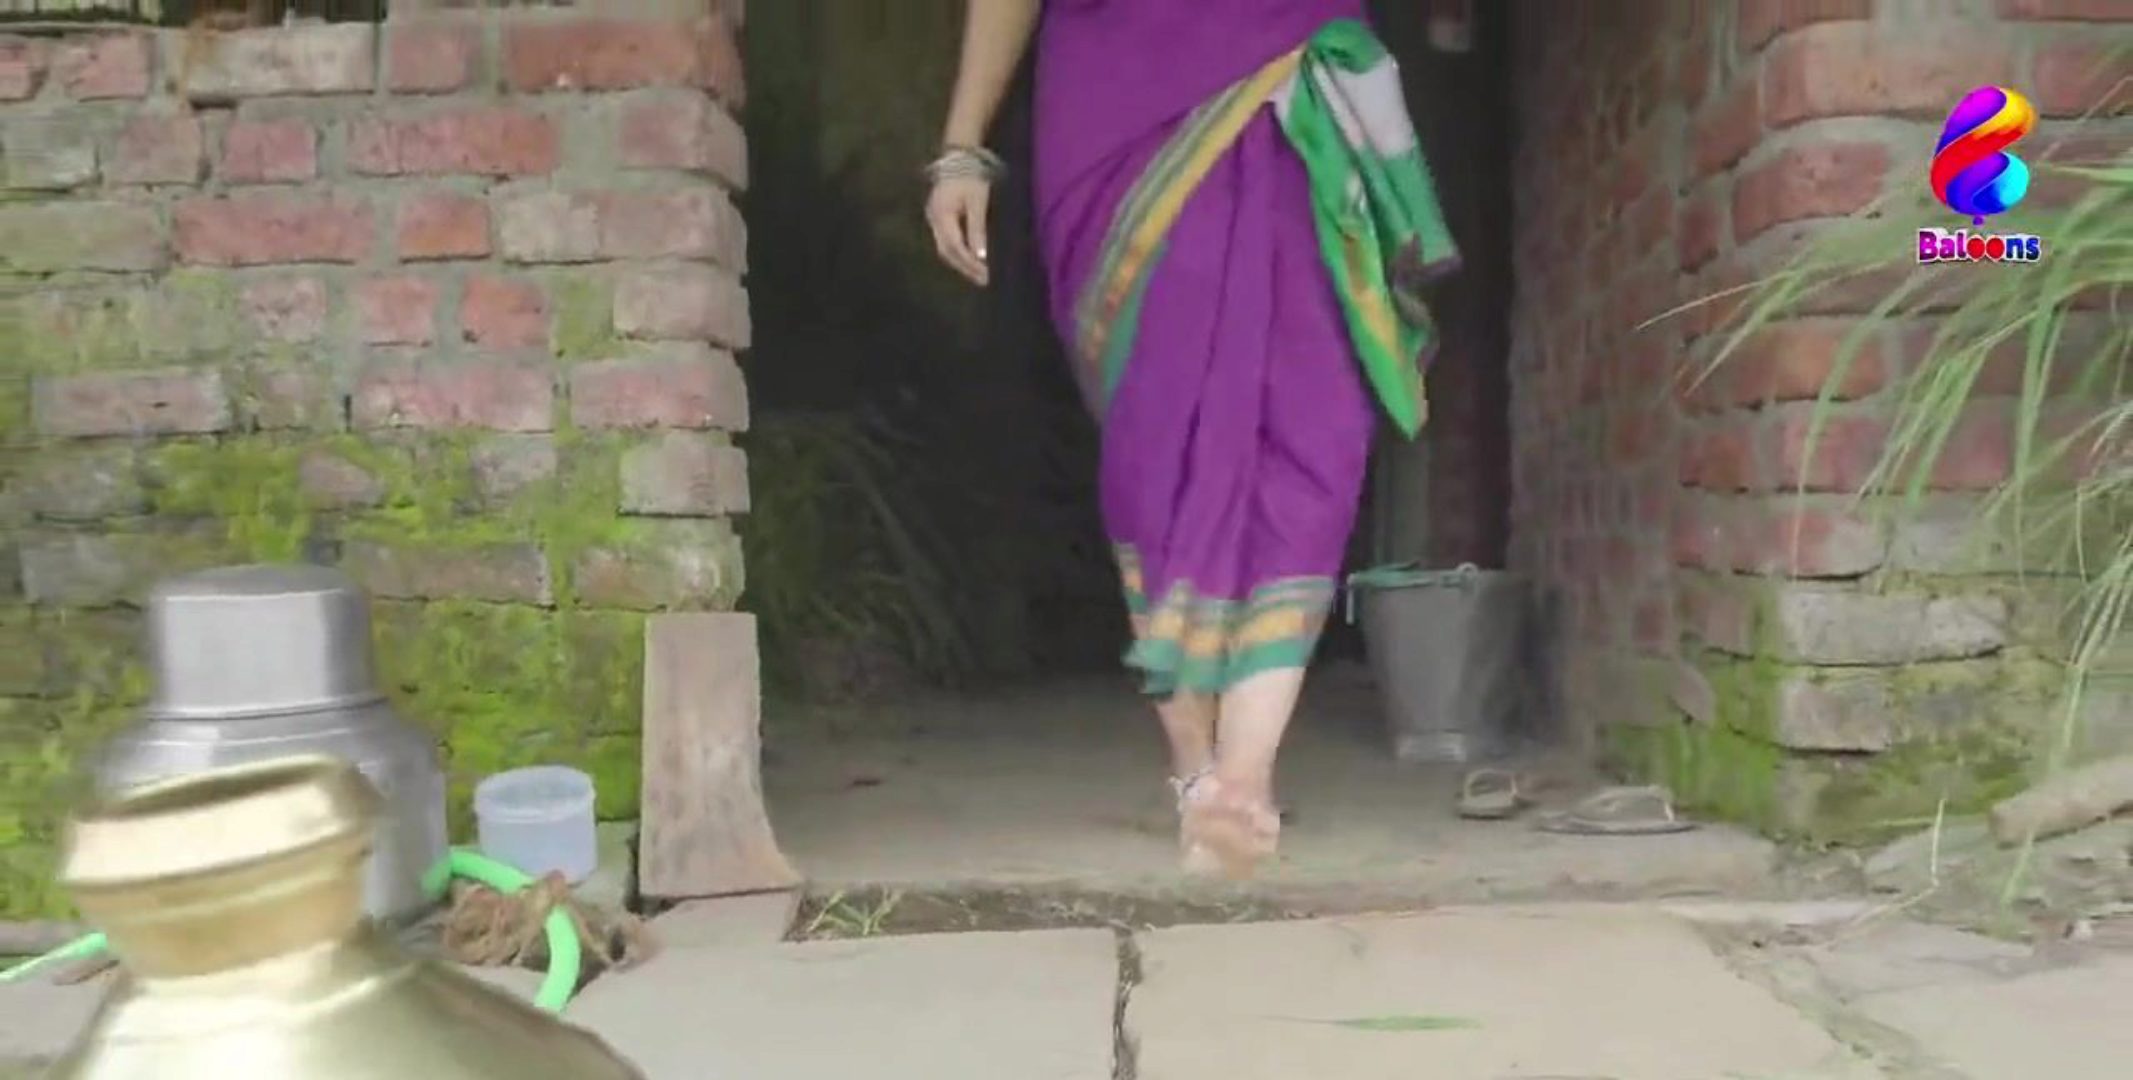 Kostenlose Bilder Von Nackten Chennai Indian Village Girls